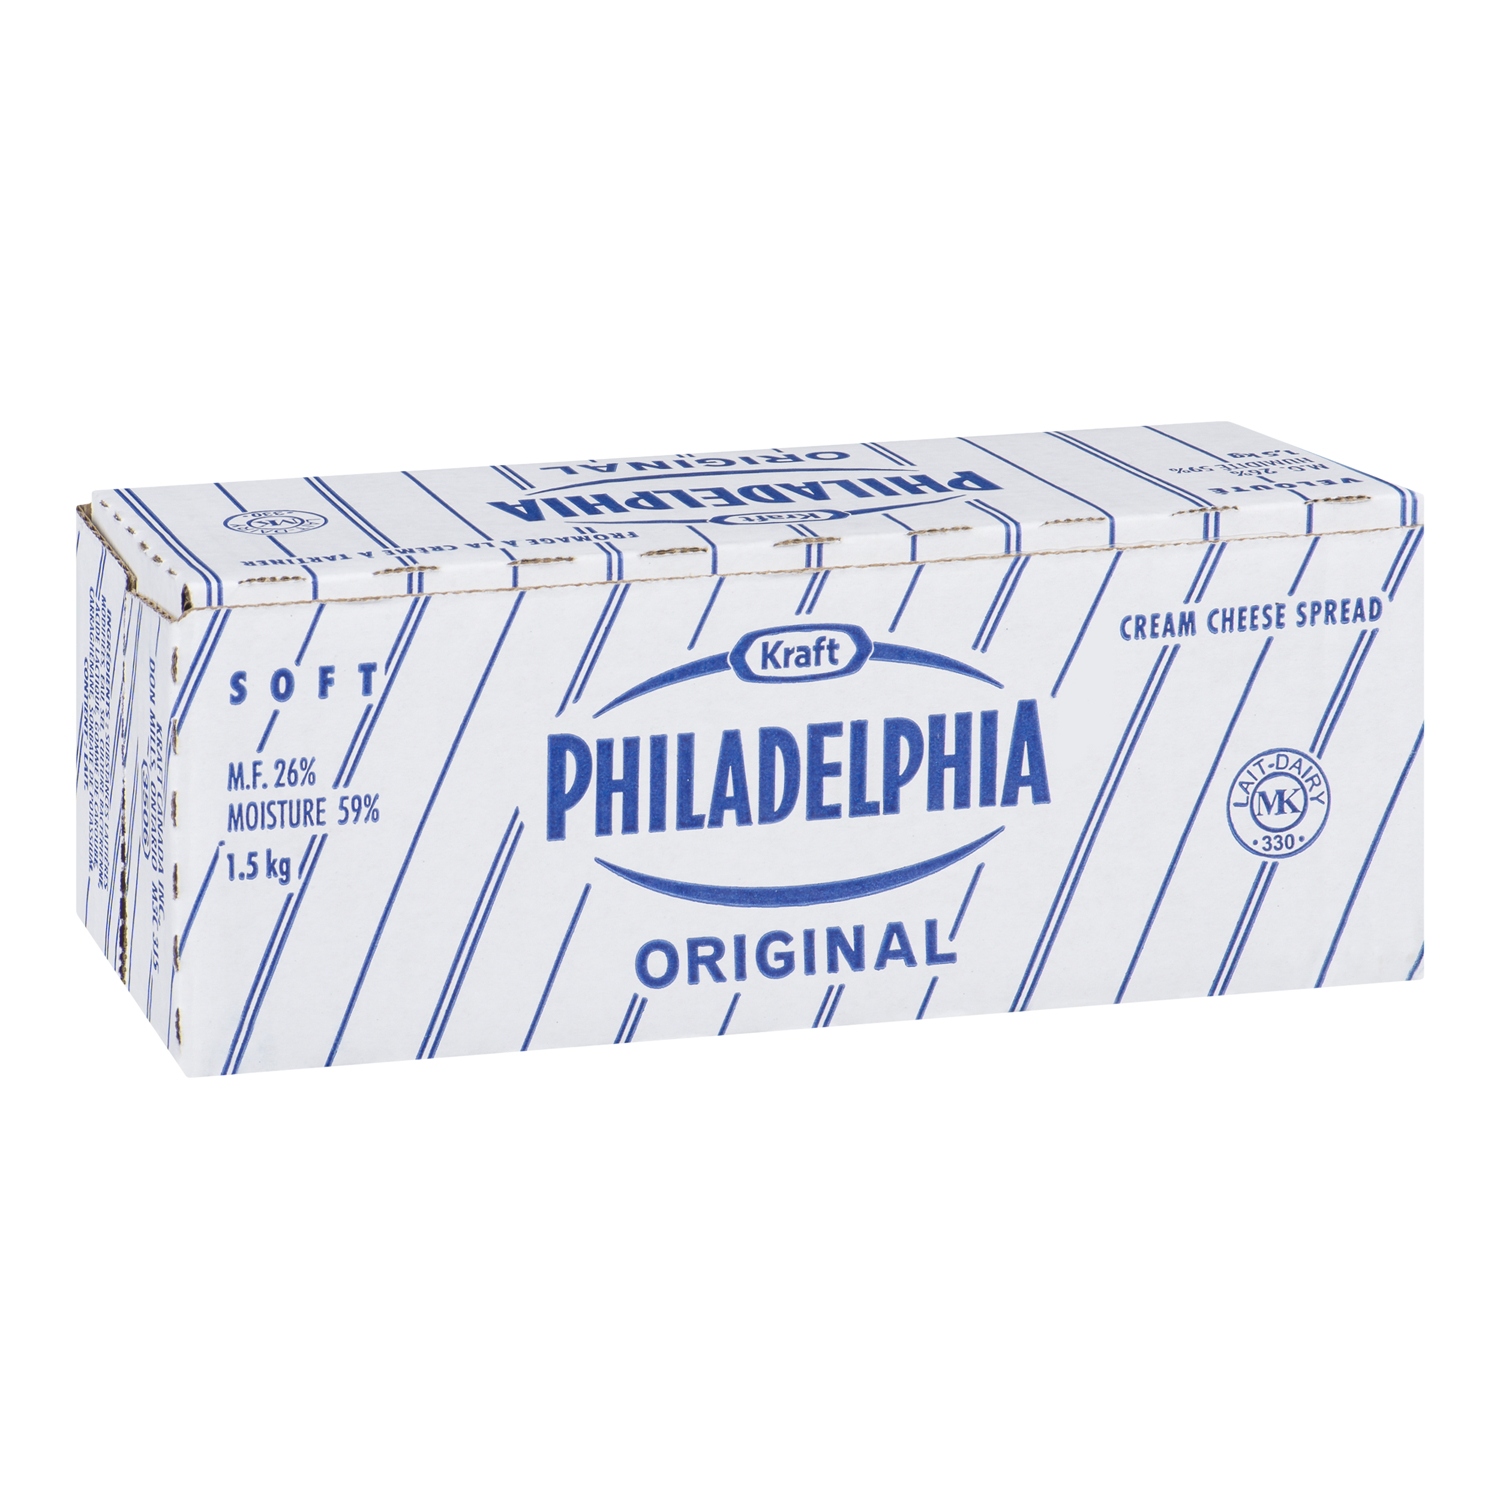  PHILADELPHIA fromage à la crème ordinaire, brique – 6 x 1,5 kg 